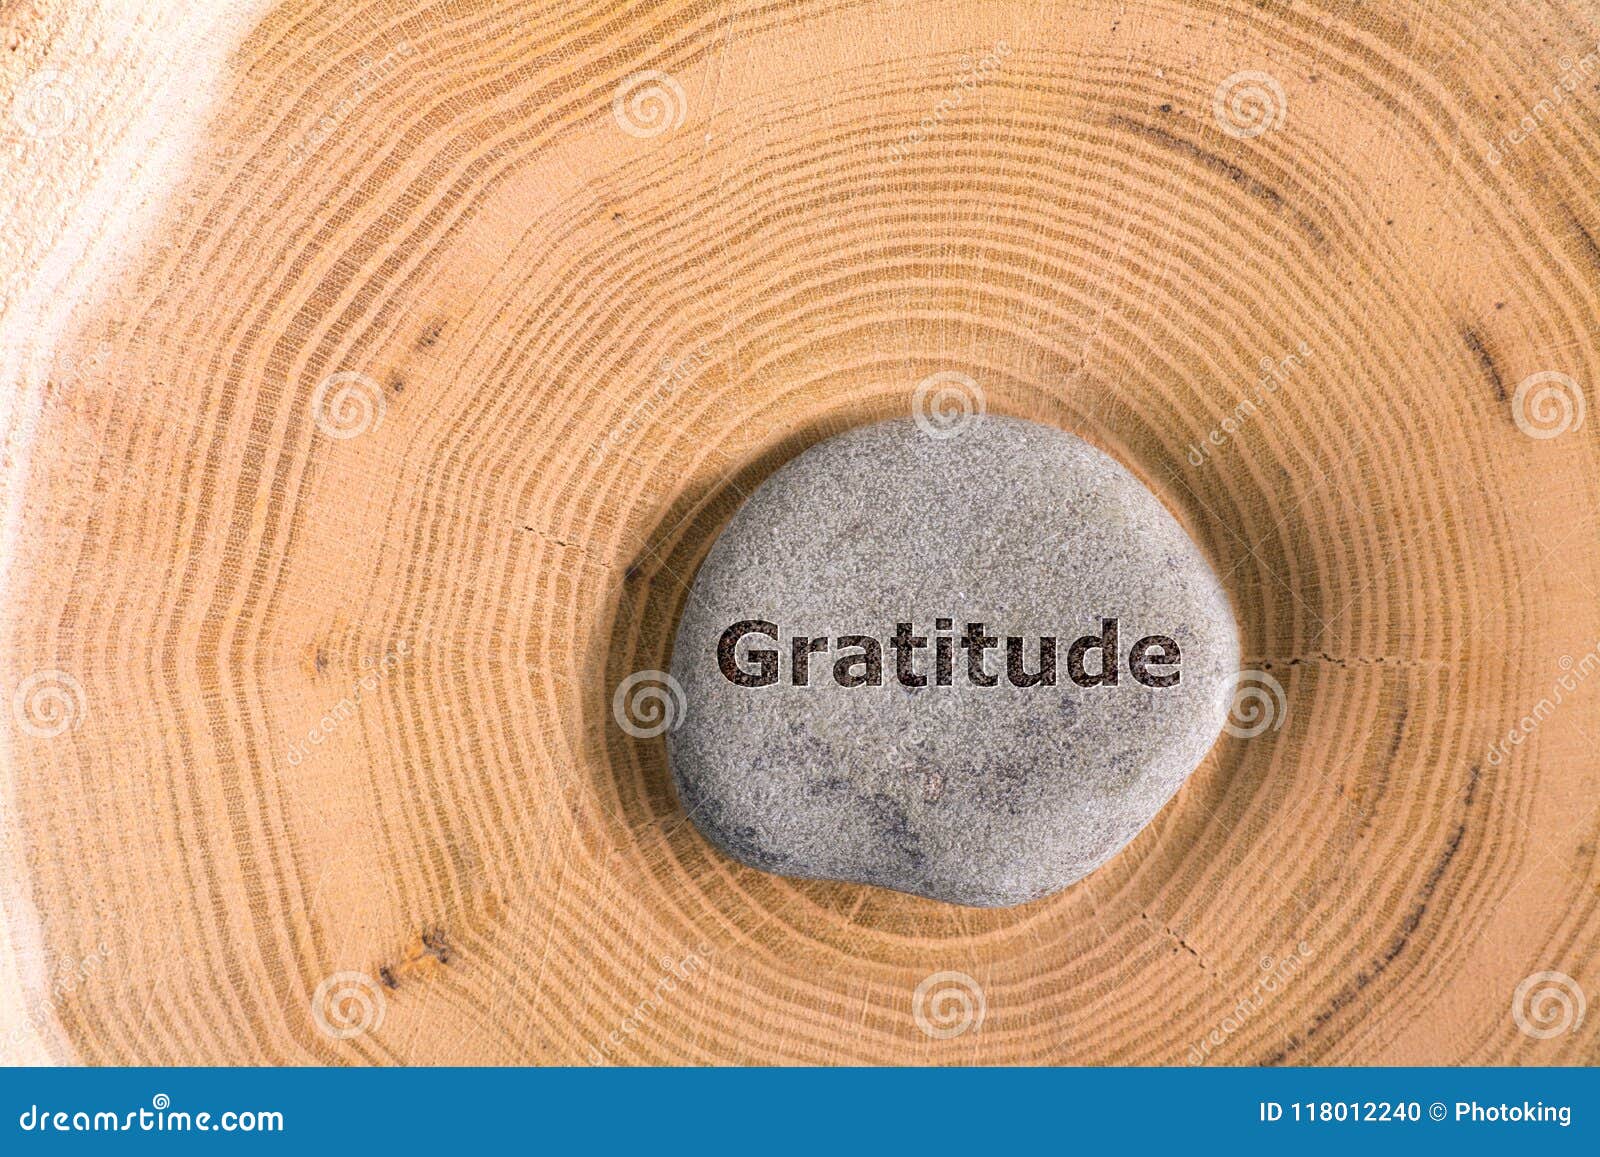 gratitude in stone on tree